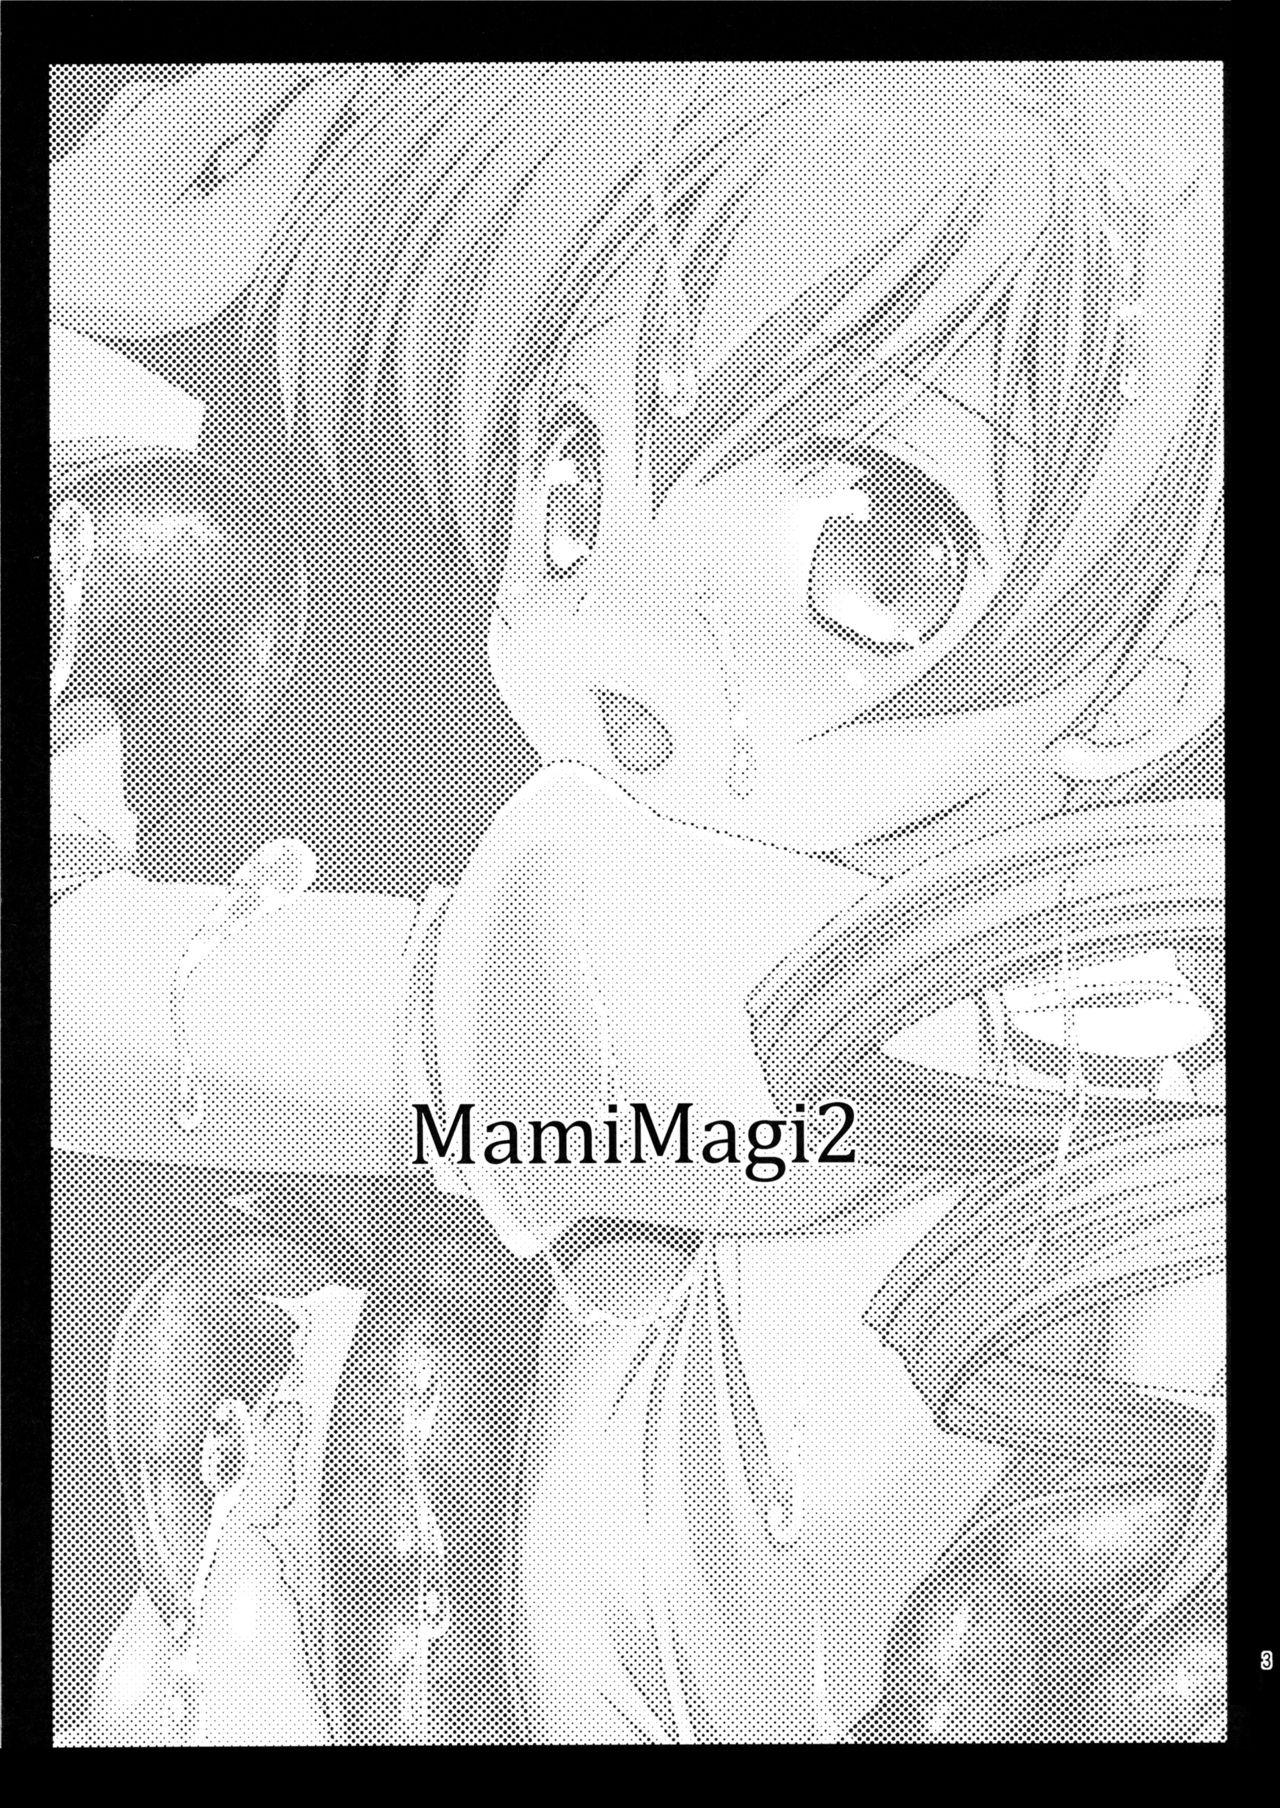 Livecam MamiMagi2 - Puella magi madoka magica Car - Page 3